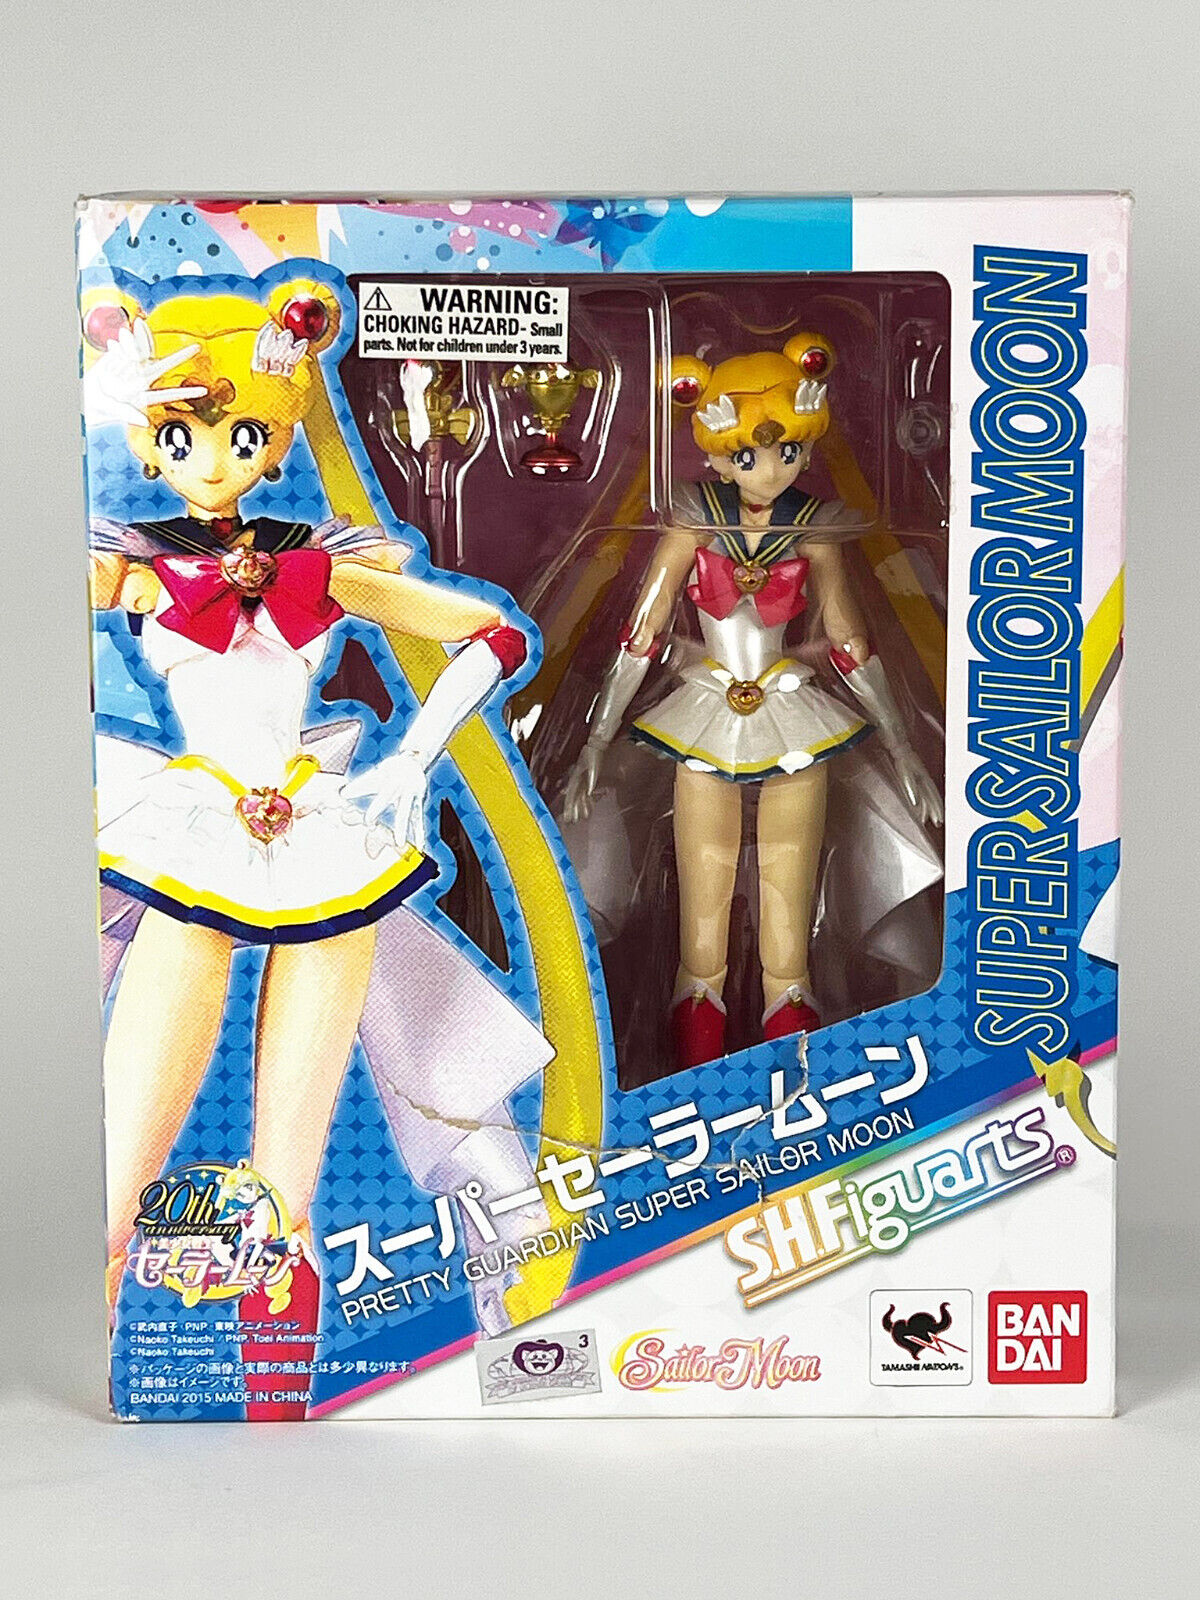 S.H.Figuarts Pretty Guardian Super Sailor Moon Action Figure Version Bandai